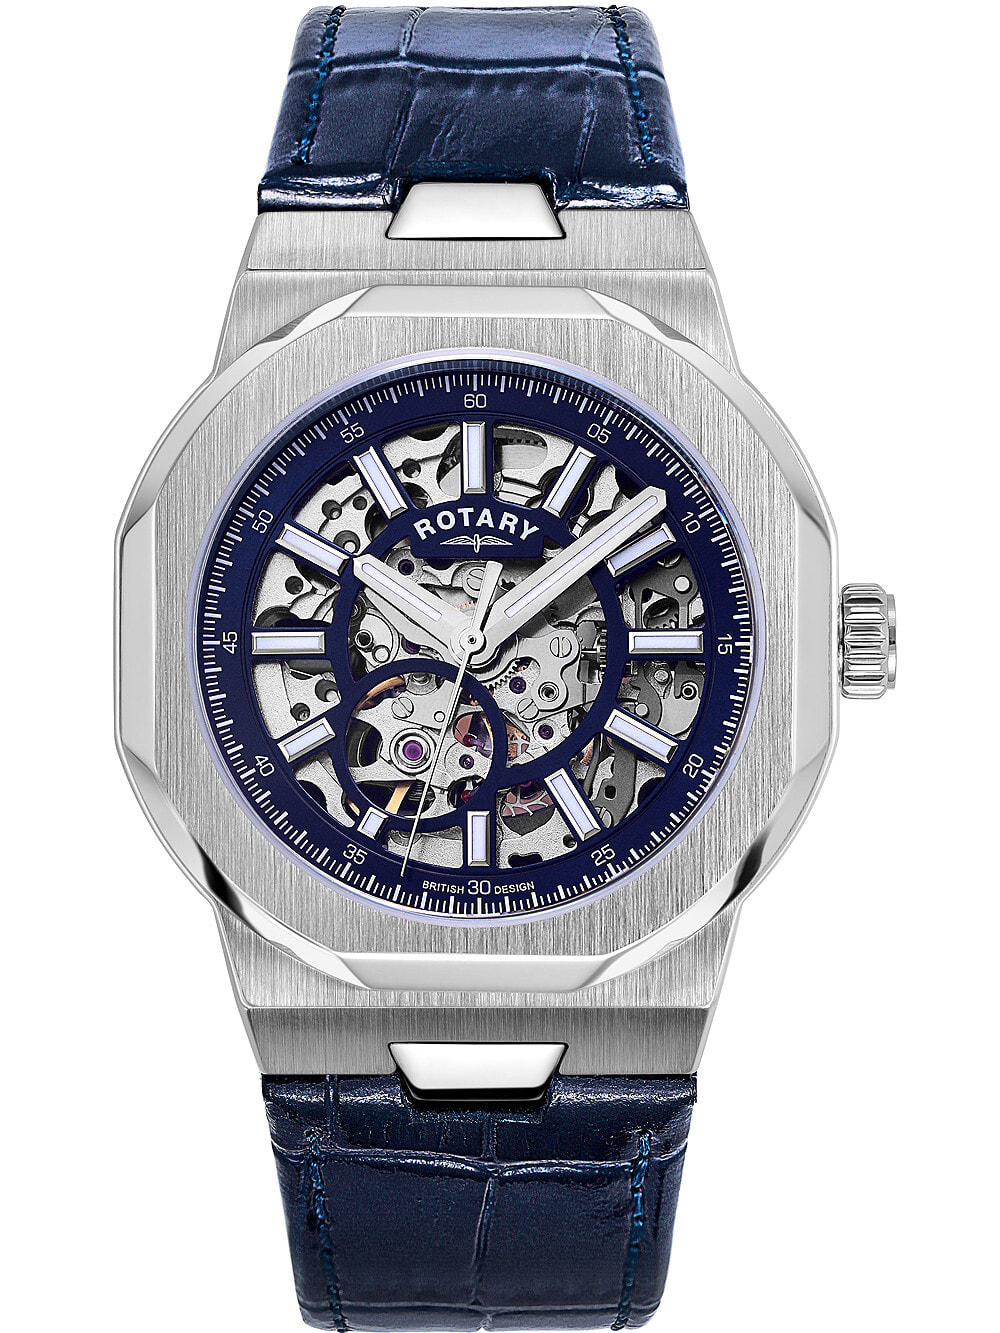 Мужские наручные часы с синим кожаным ремешком  Rotary GS05415/05 Regent automatic 40mm 10ATM